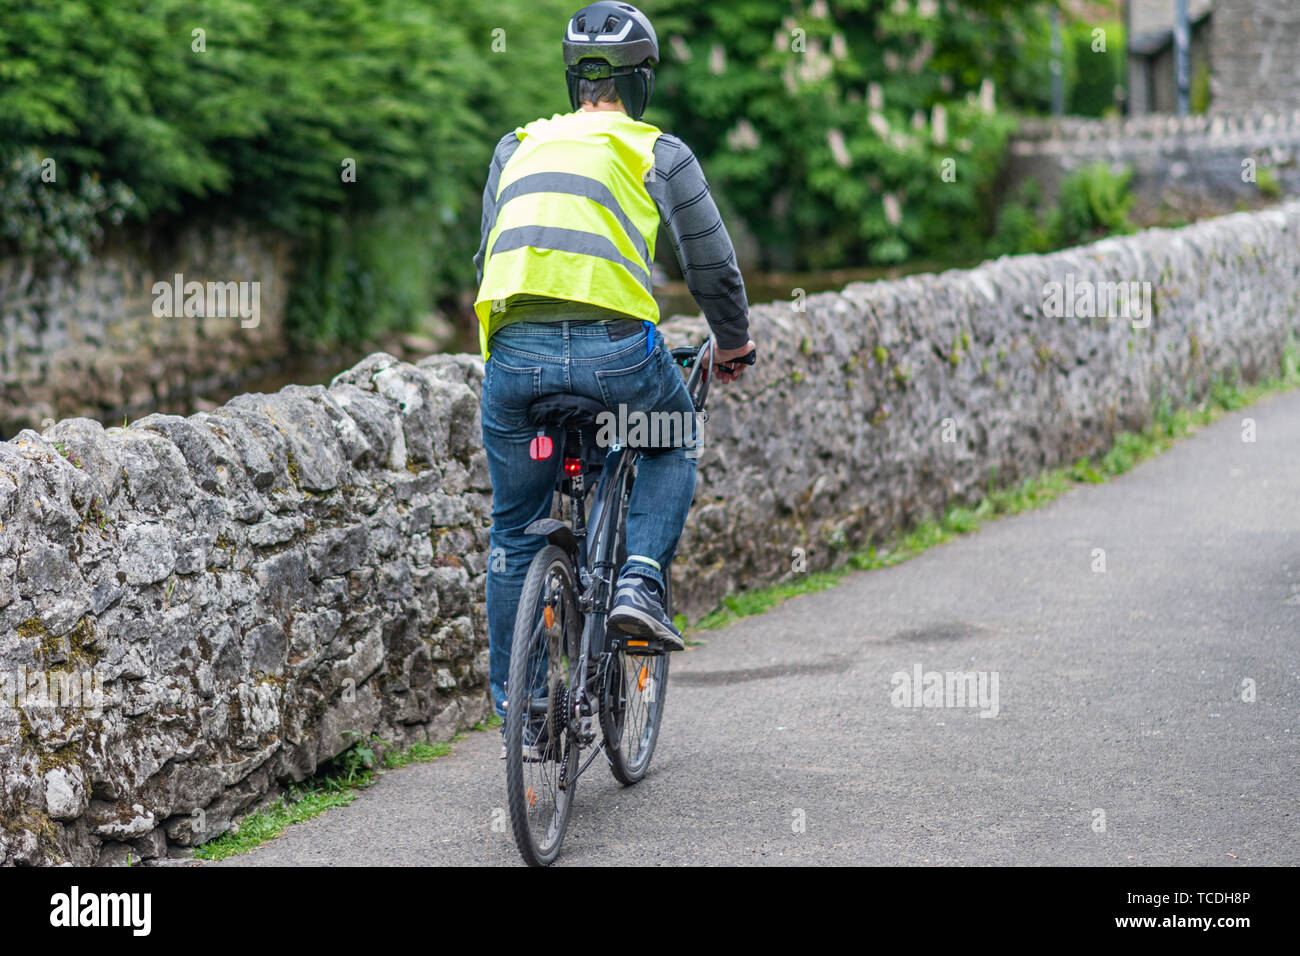 Eine männliche Radfahrer fährt Fahrrad in voller Schutzausrüstung - Helm, hohe Sichtbarkeit Jacke, Fahrrad Beleuchtung Stockfoto